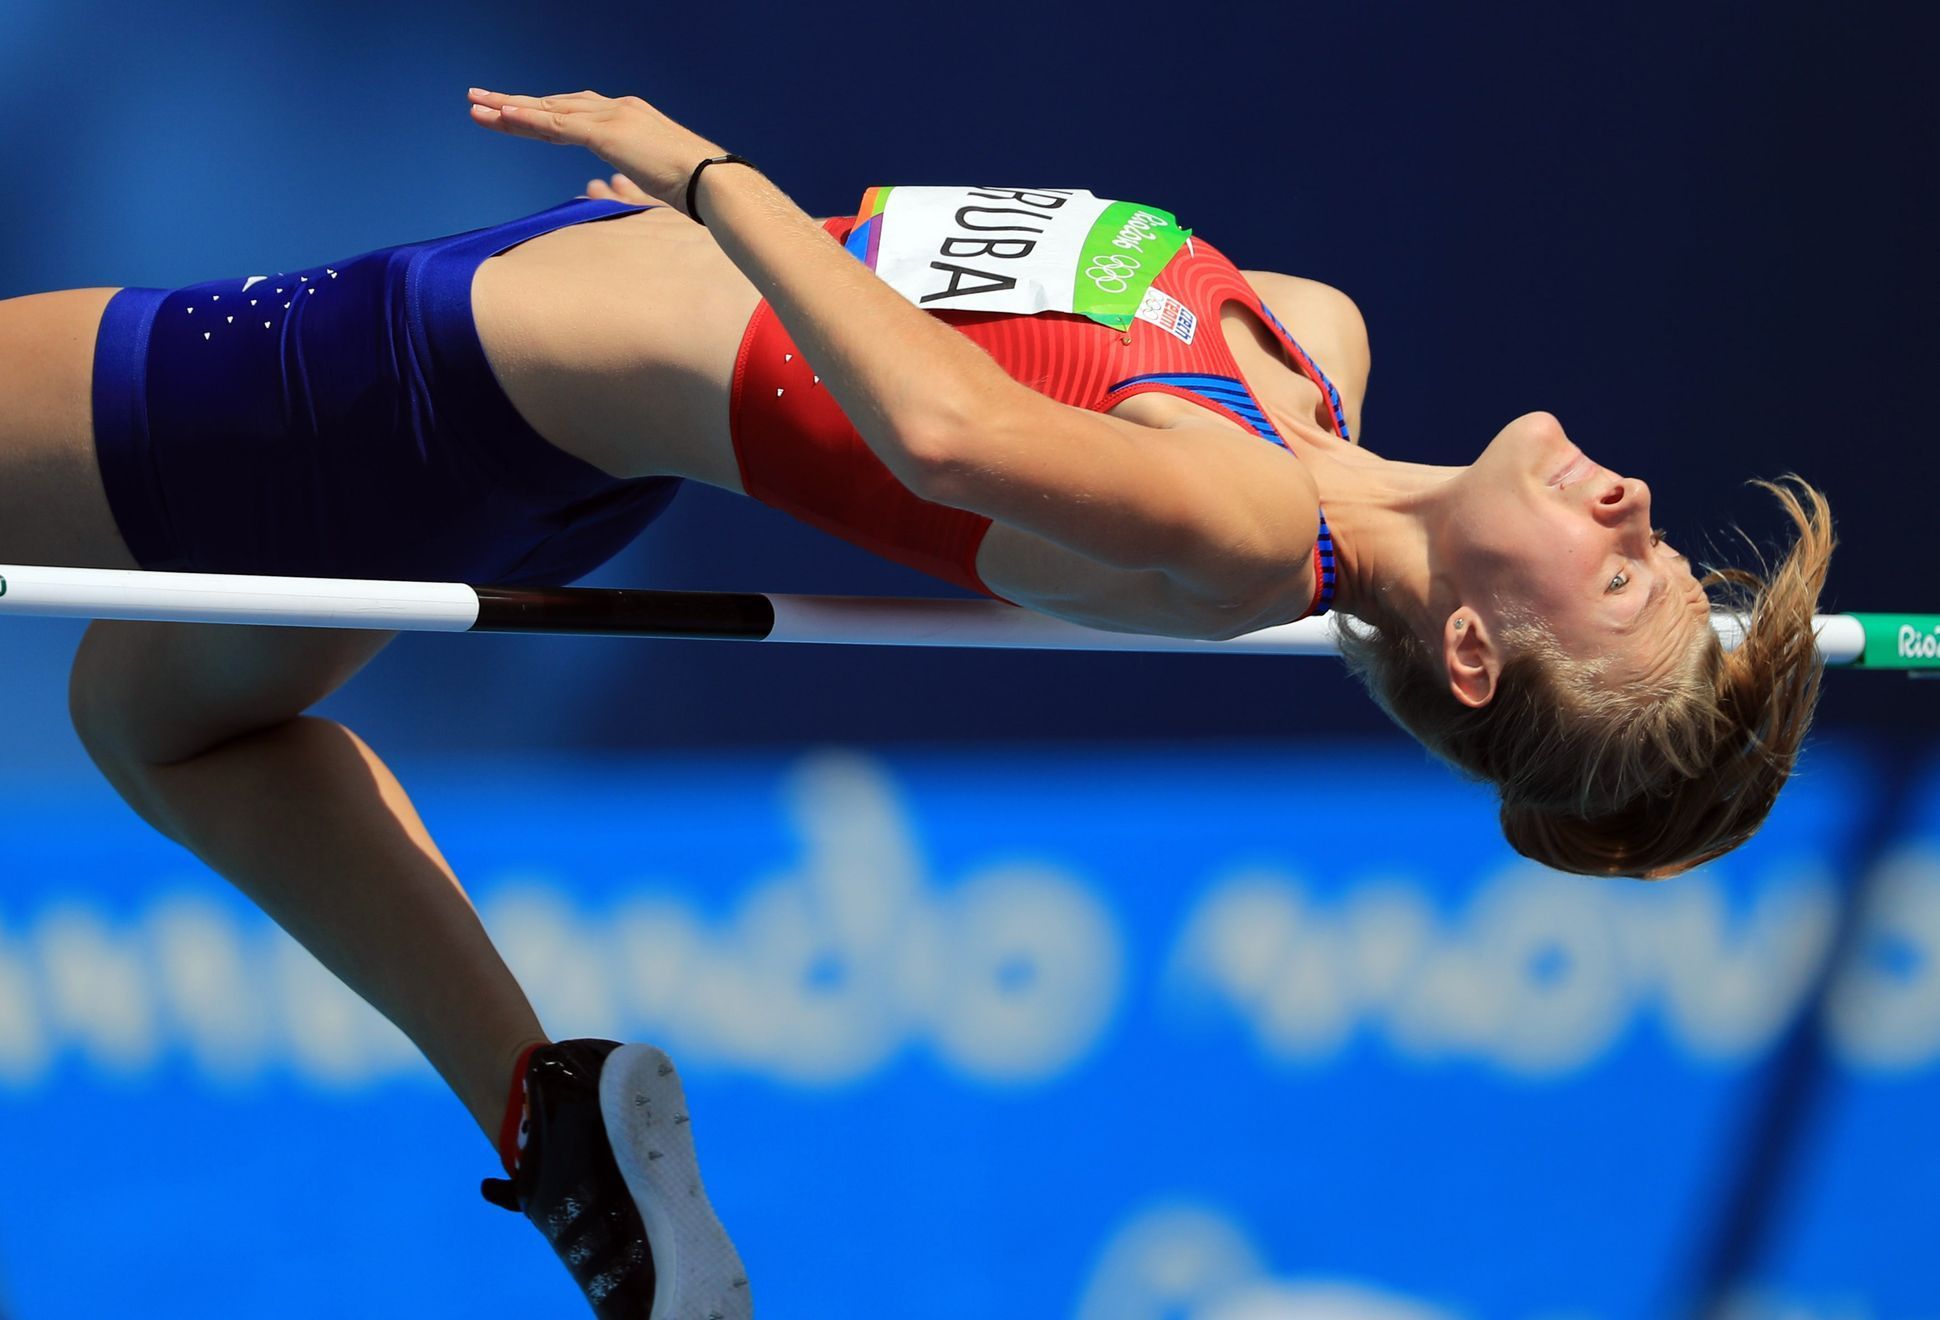 OH 2016 - atletika, skok do výšky Ž: Michaela Hrubá